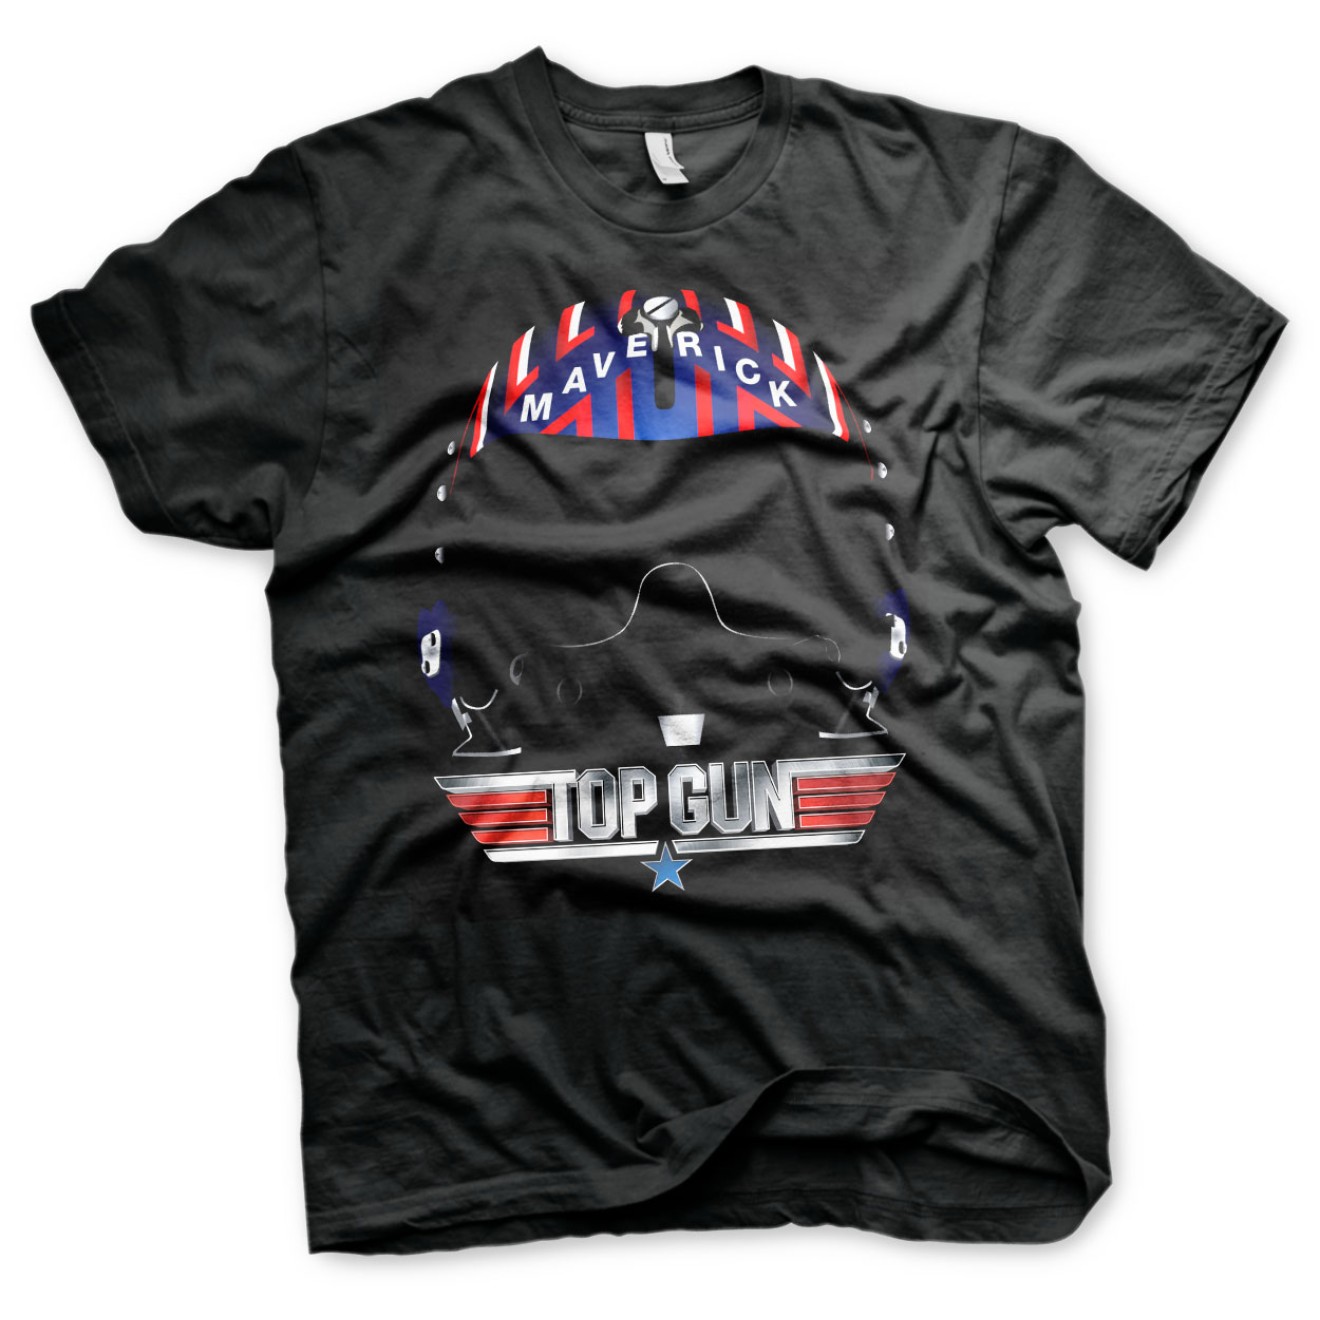 Top Gun - Maverick Helmet T-Shirt